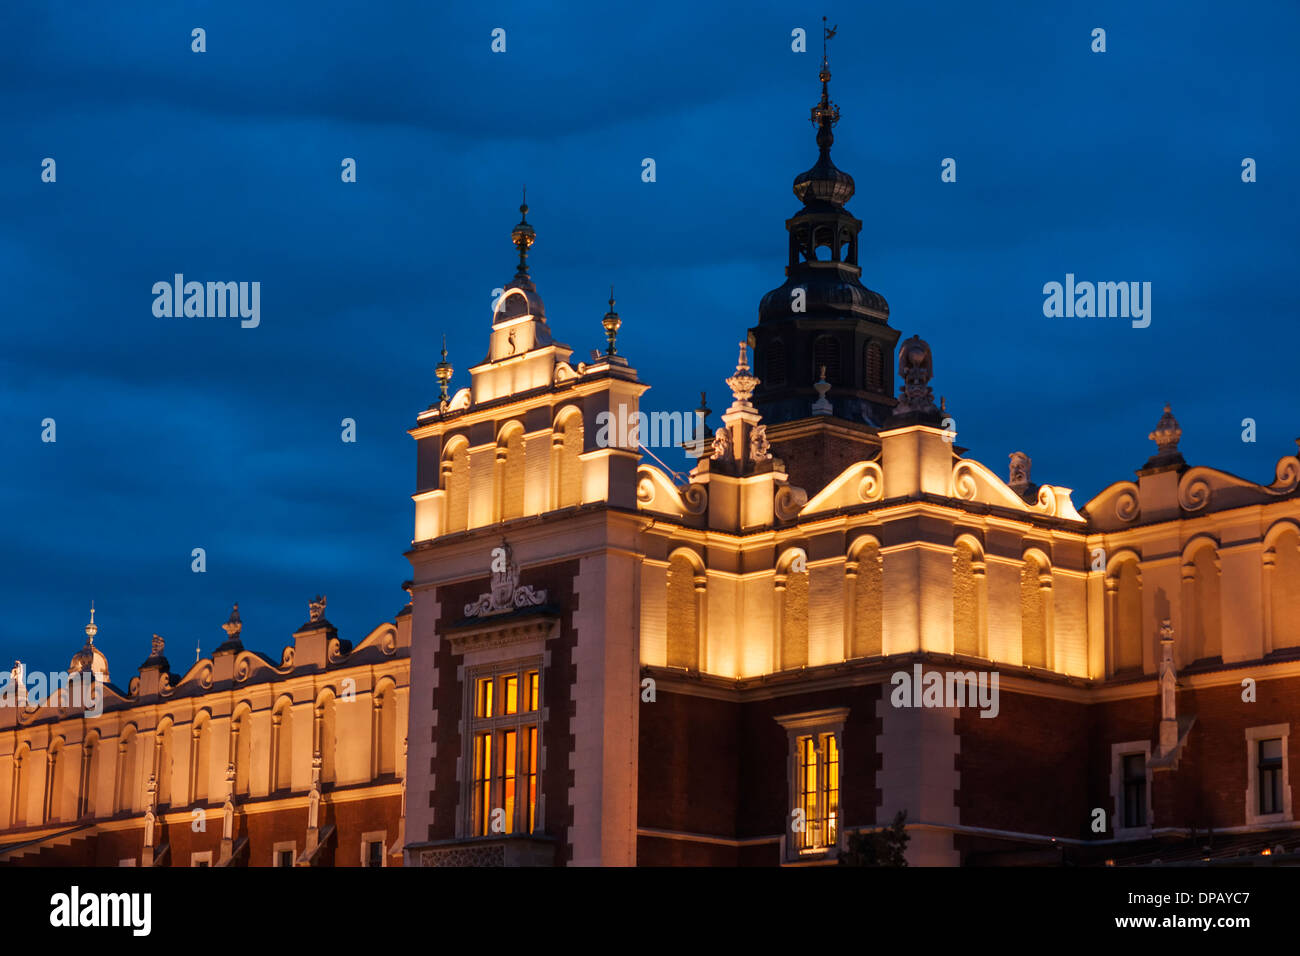 Bâtiment de la Halle aux draps et tour de l'horloge illuminée la nuit dans le Vieux Carré, Rynek Glowny, Cracovie, Pologne, Europe Banque D'Images